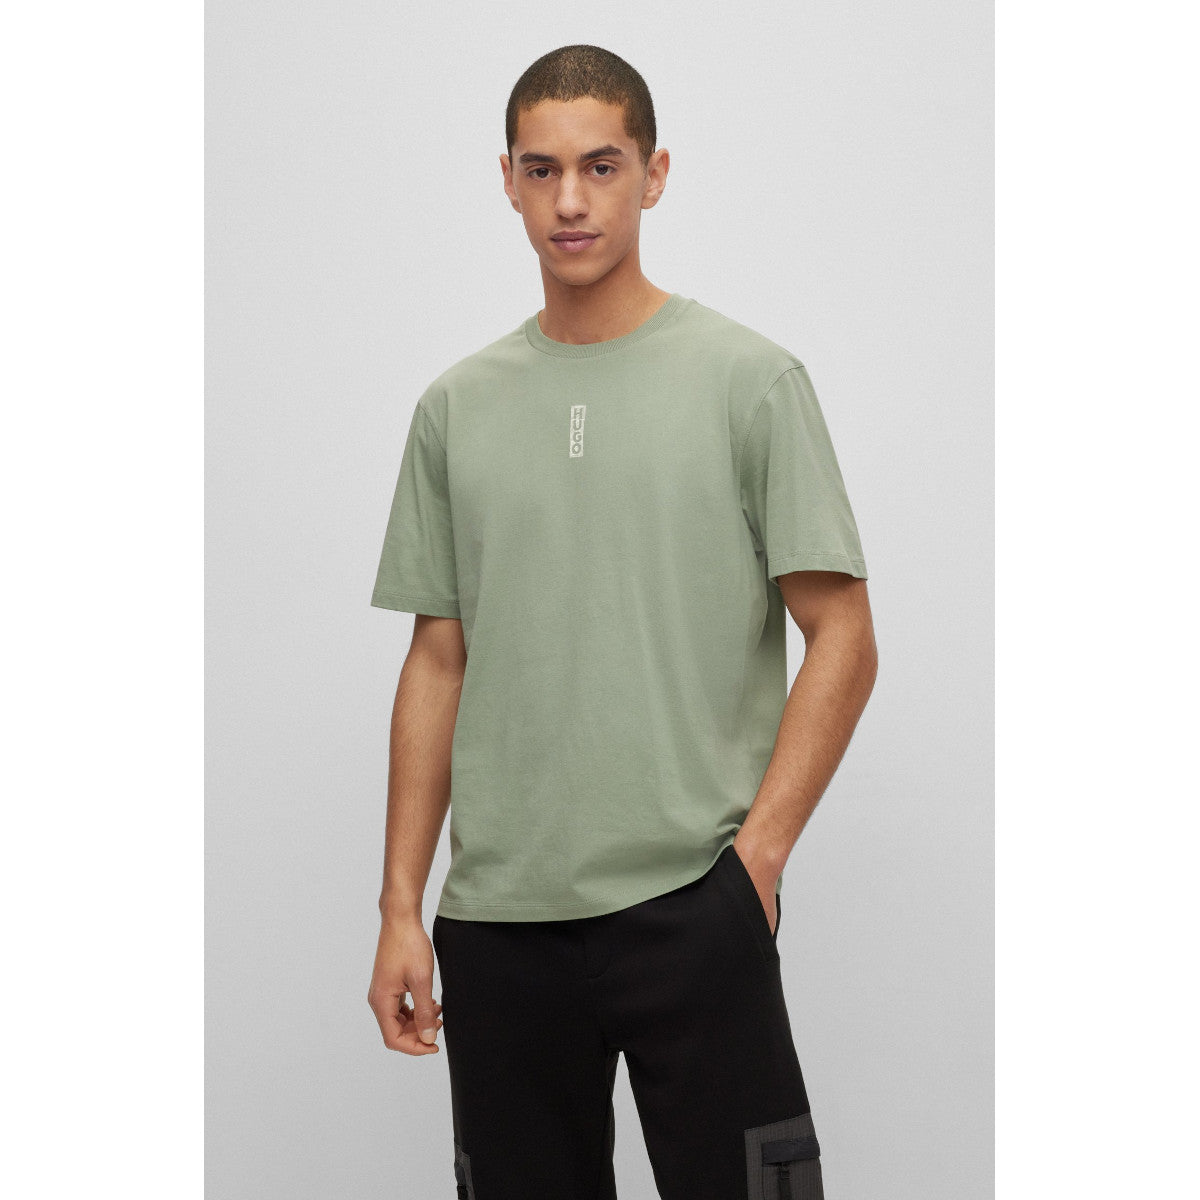 HUGO Danden T-Shirt 330 Light Pastel Green